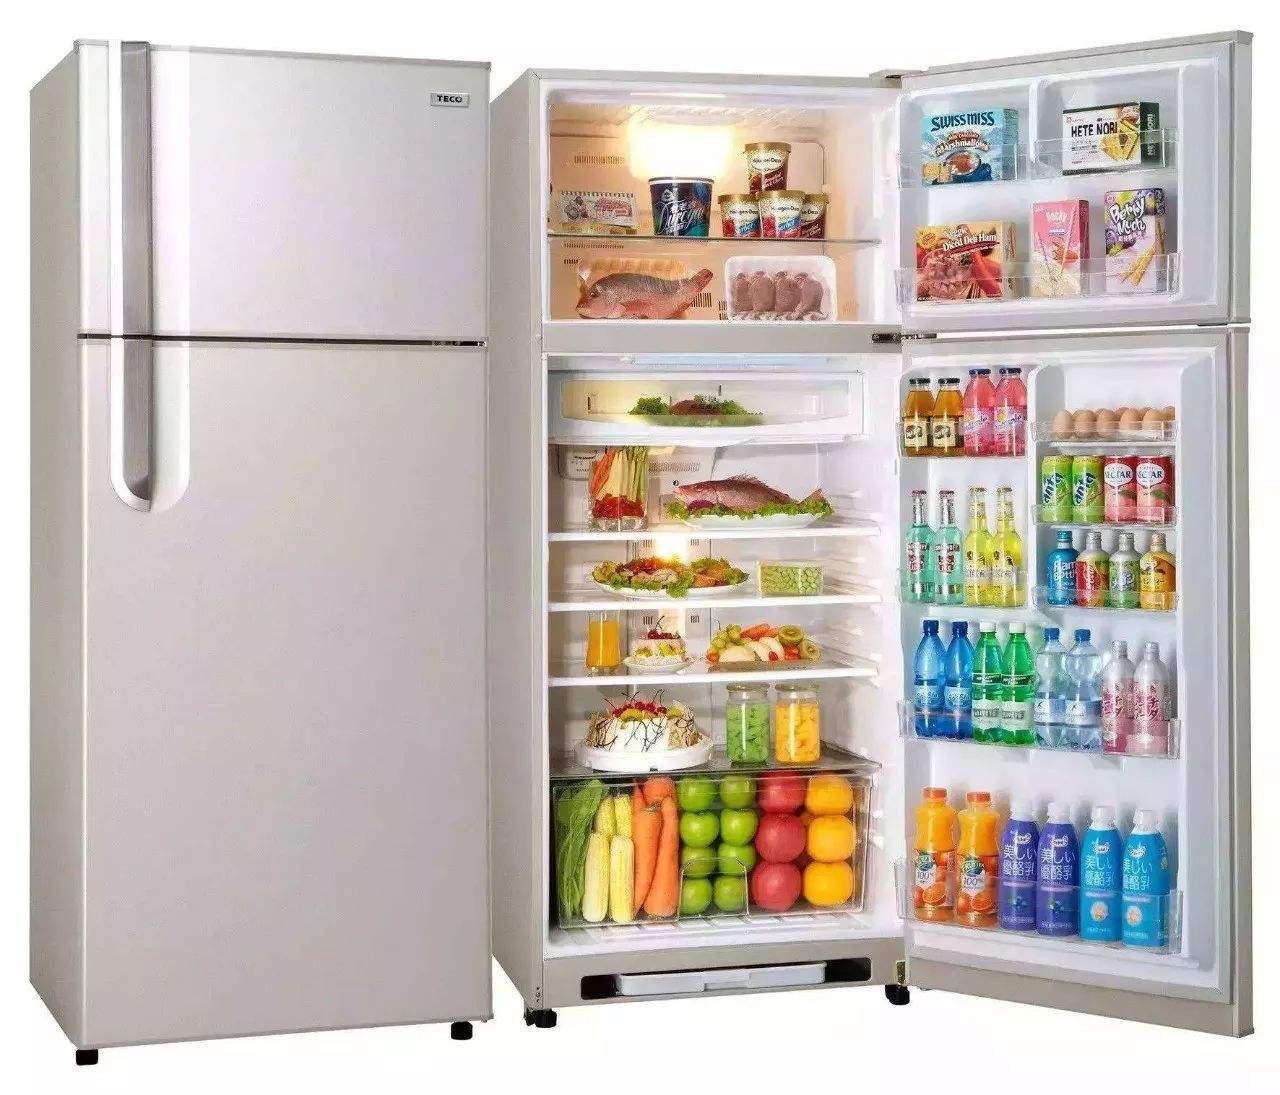 电冰箱冷藏室结冰怎么办